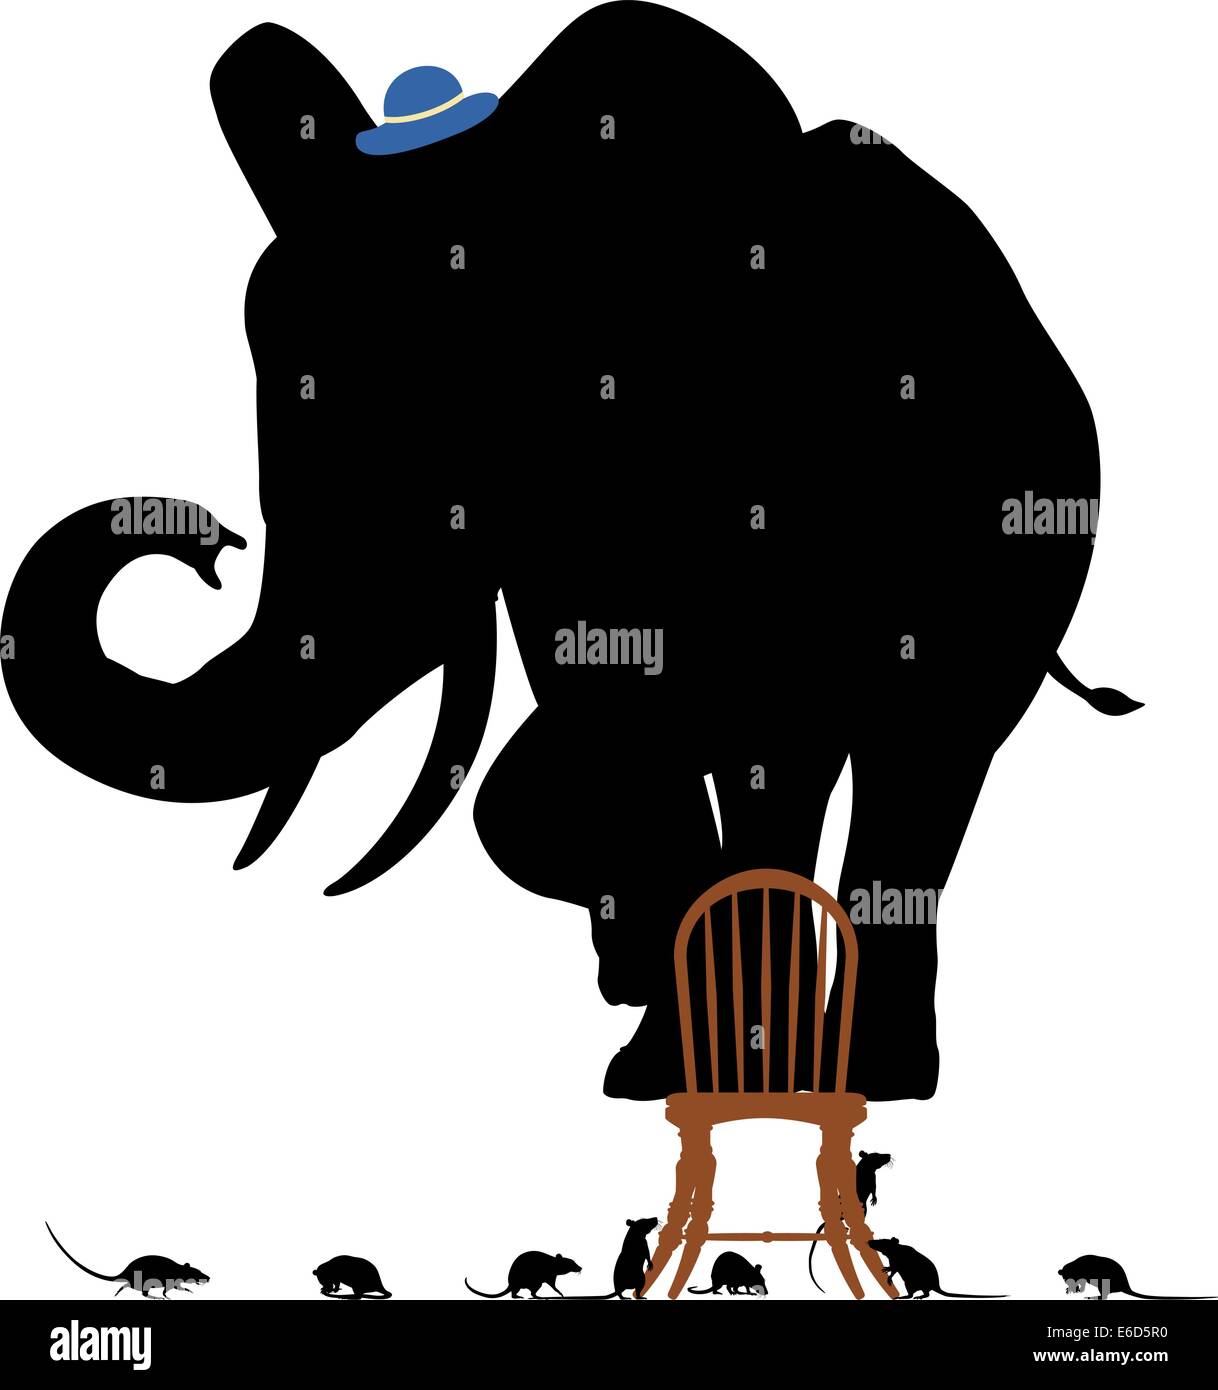 Editierbare Vector Silhouetten von einem verängstigten Elefanten auf einem Stuhl, umgeben von Ratten Stock Vektor